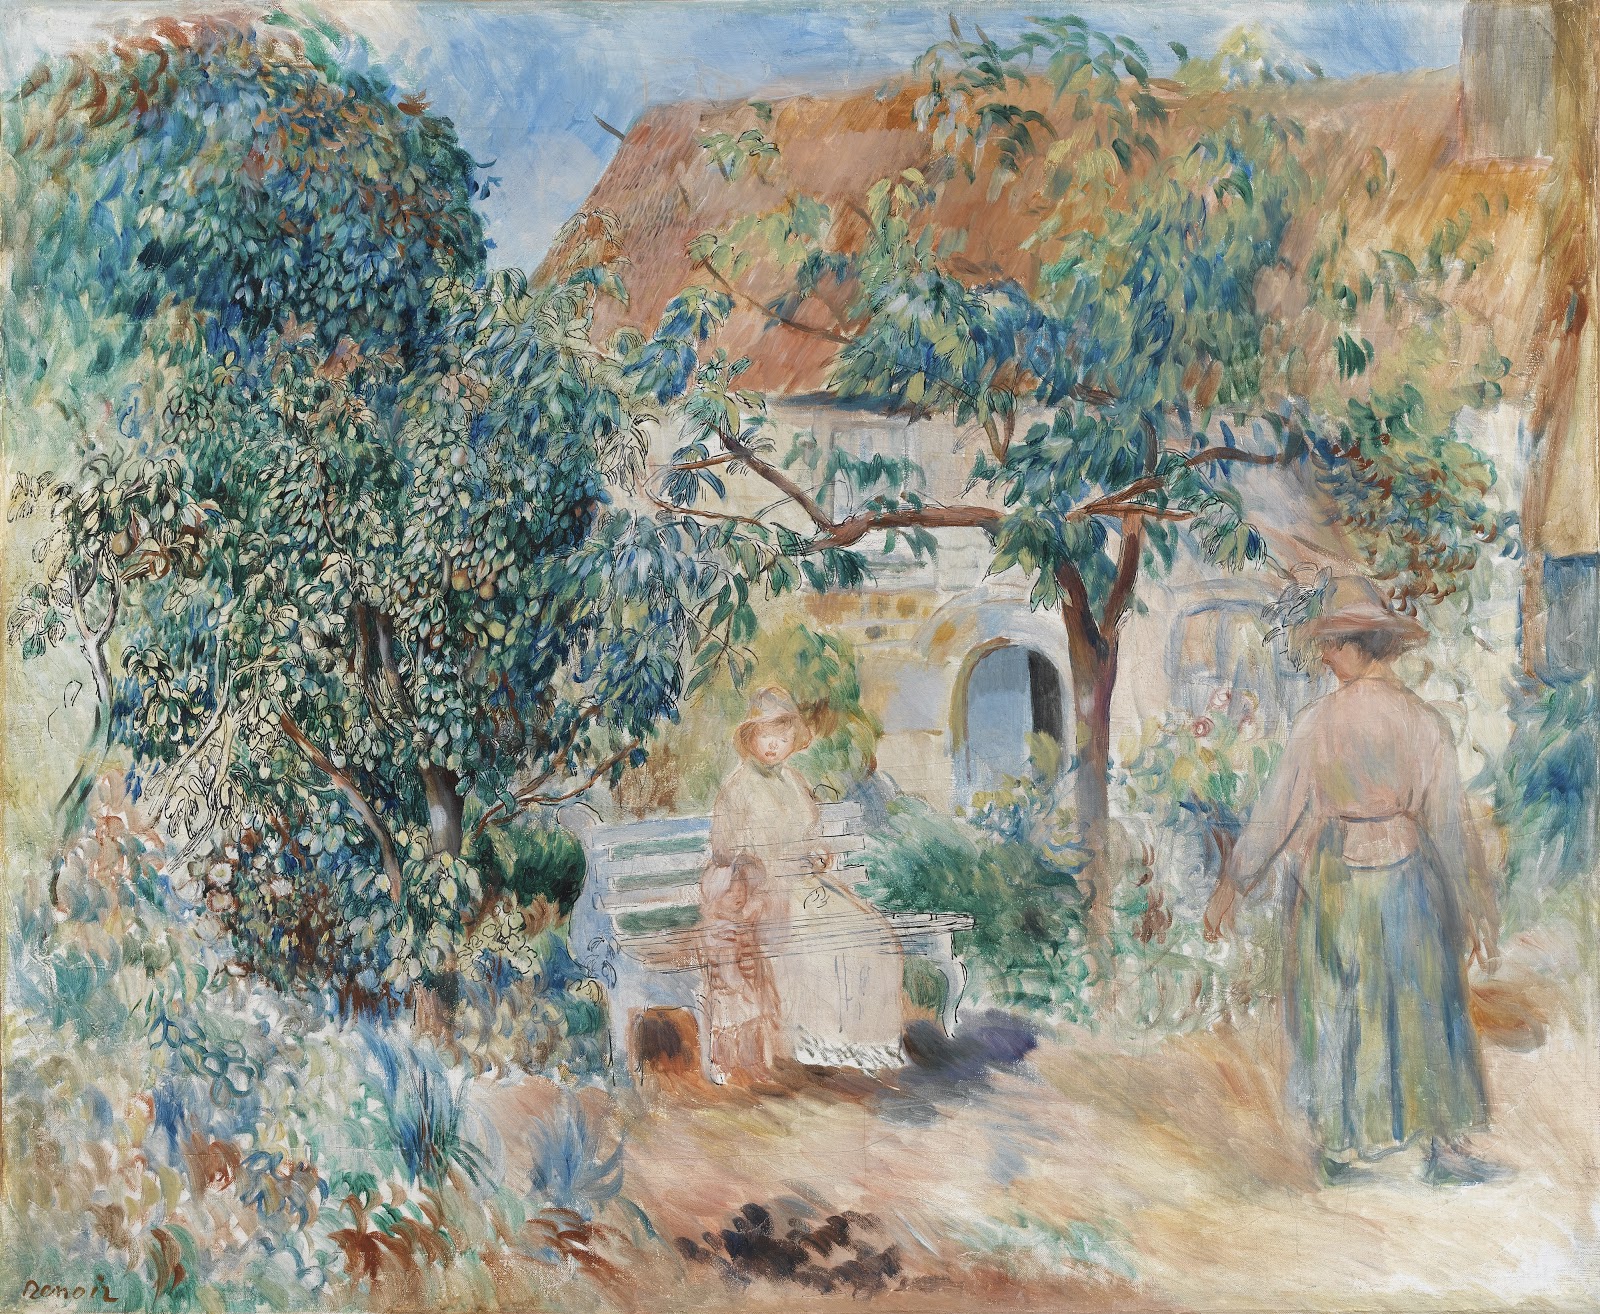 Pierre+Auguste+Renoir-1841-1-19 (418).jpg